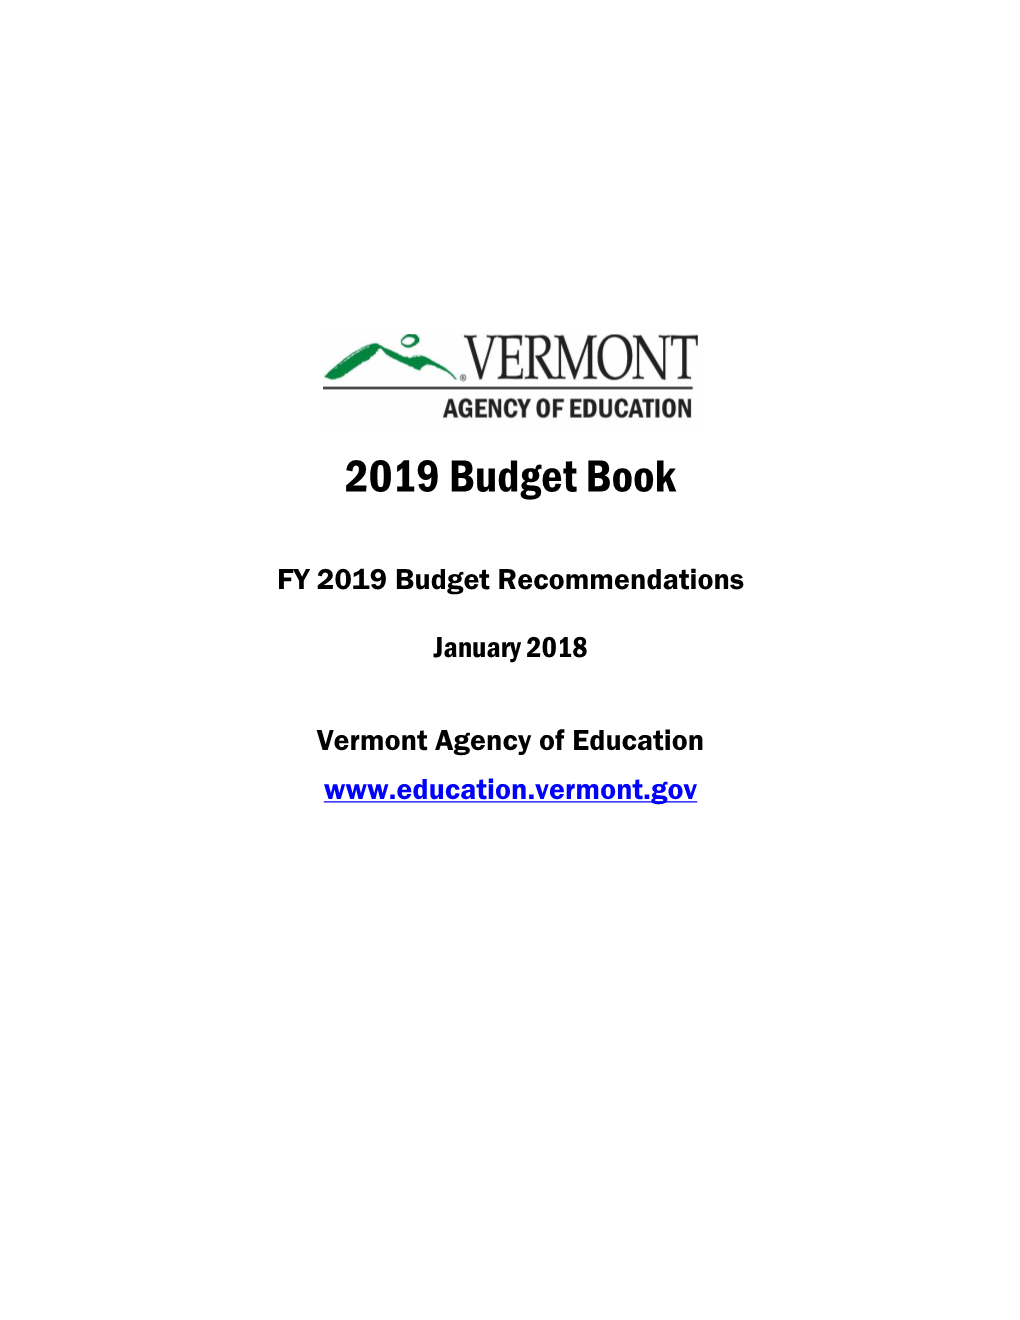 AOE Budget Book, 2019